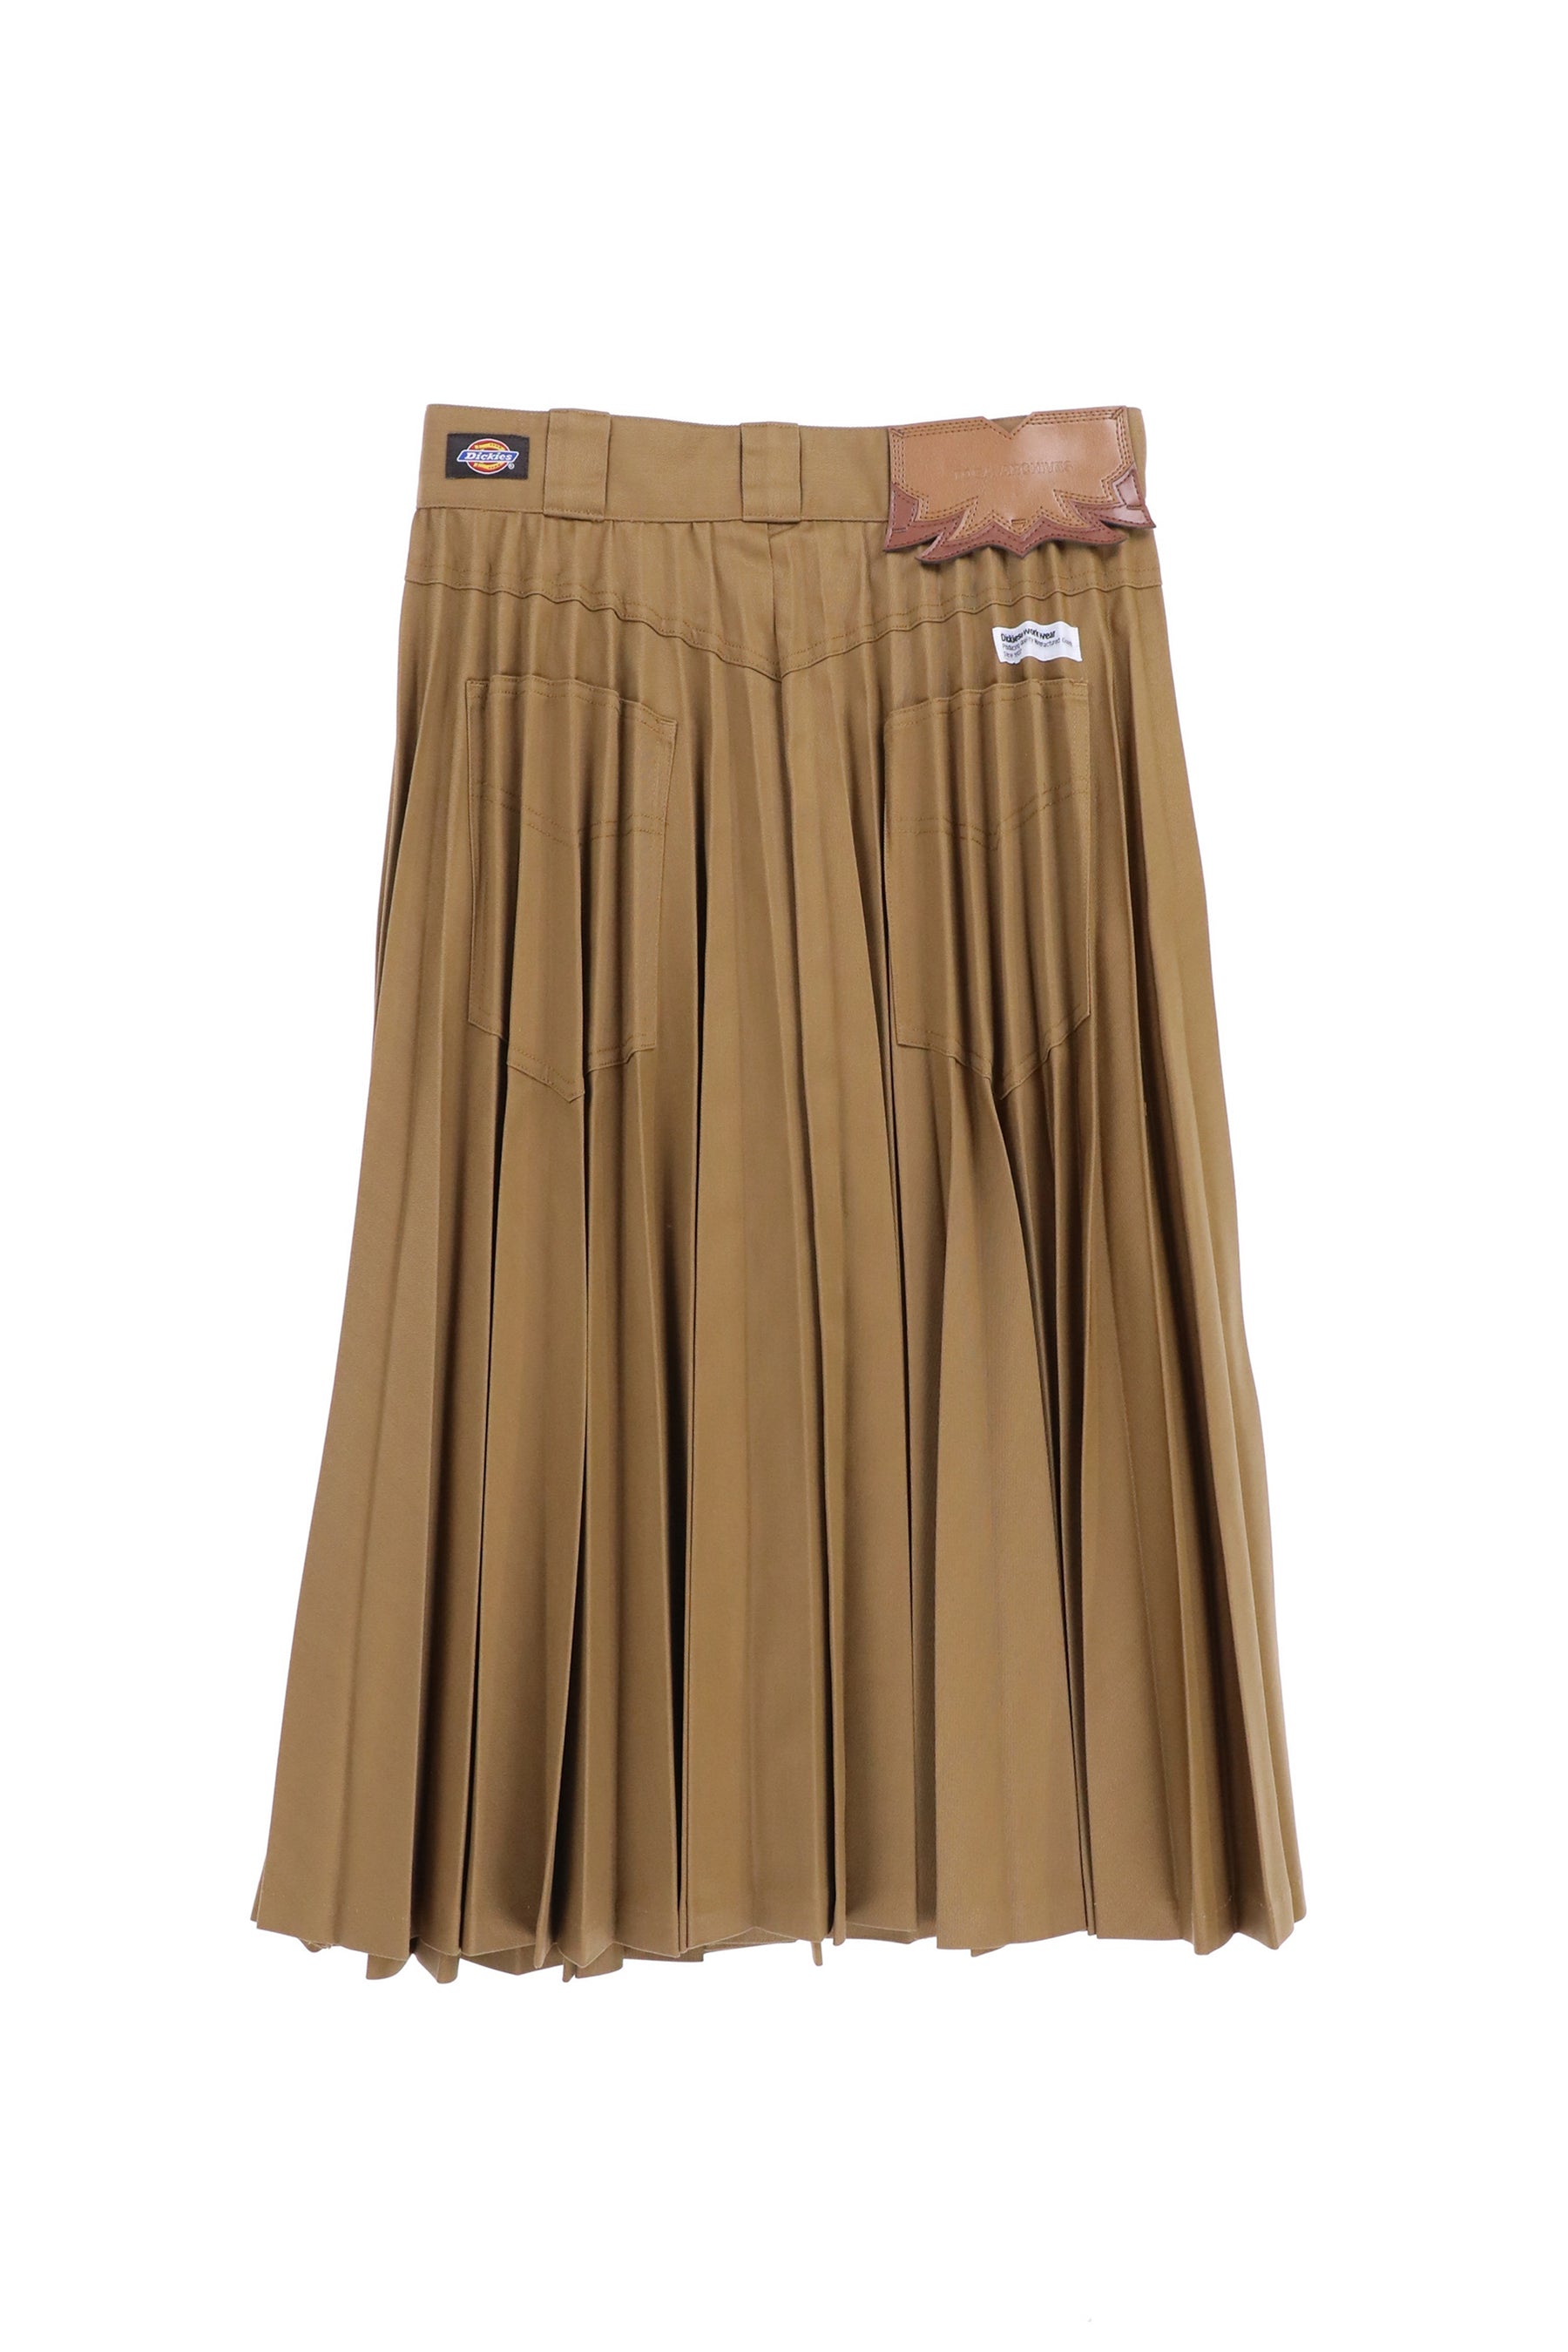 iam official     Pleats long skirt